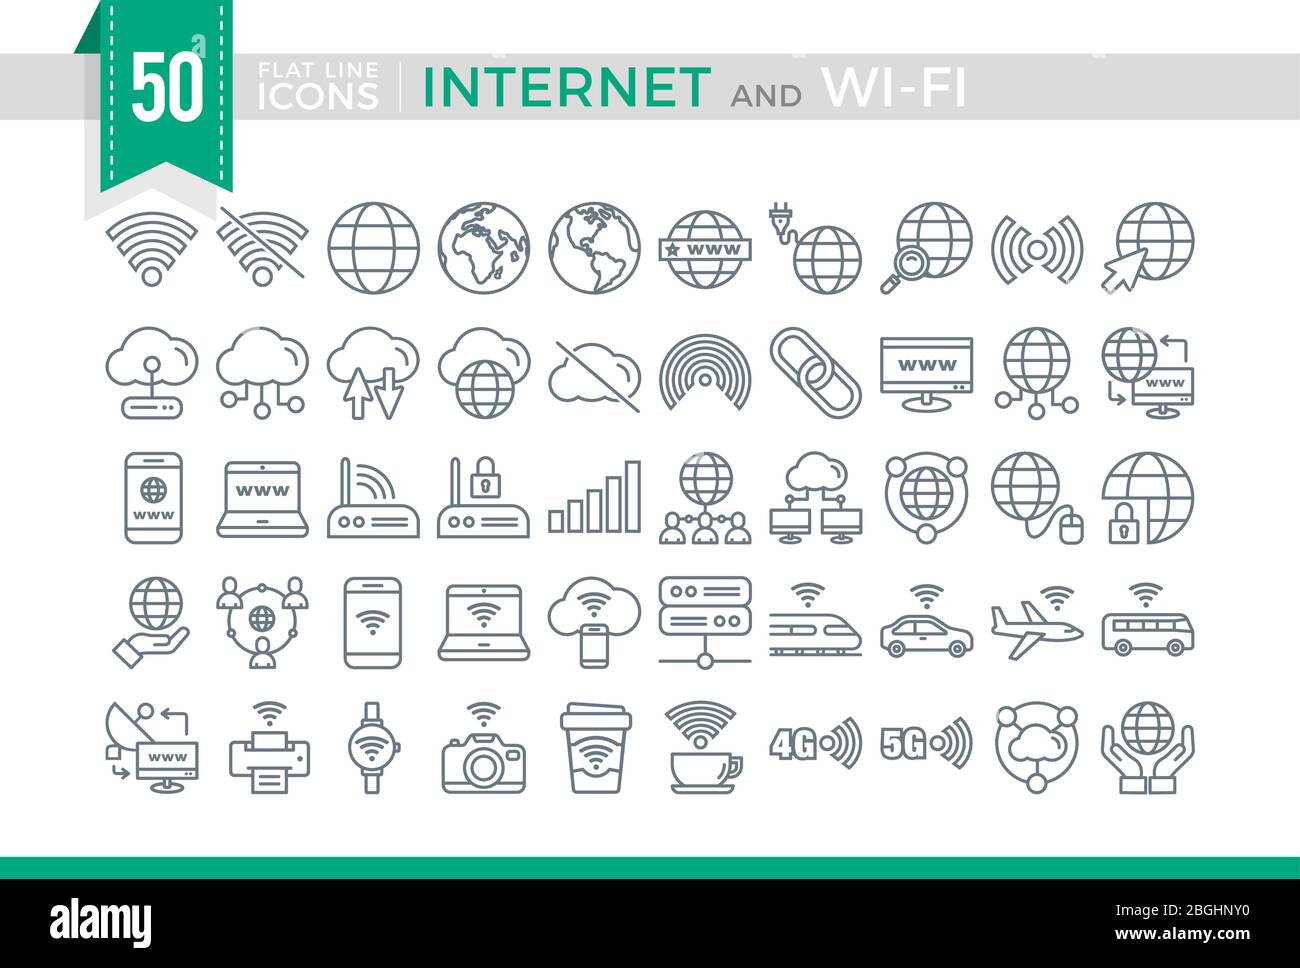 Définissez les icônes Vector Flat Line Internet et Wi-Fi Illustration de Vecteur